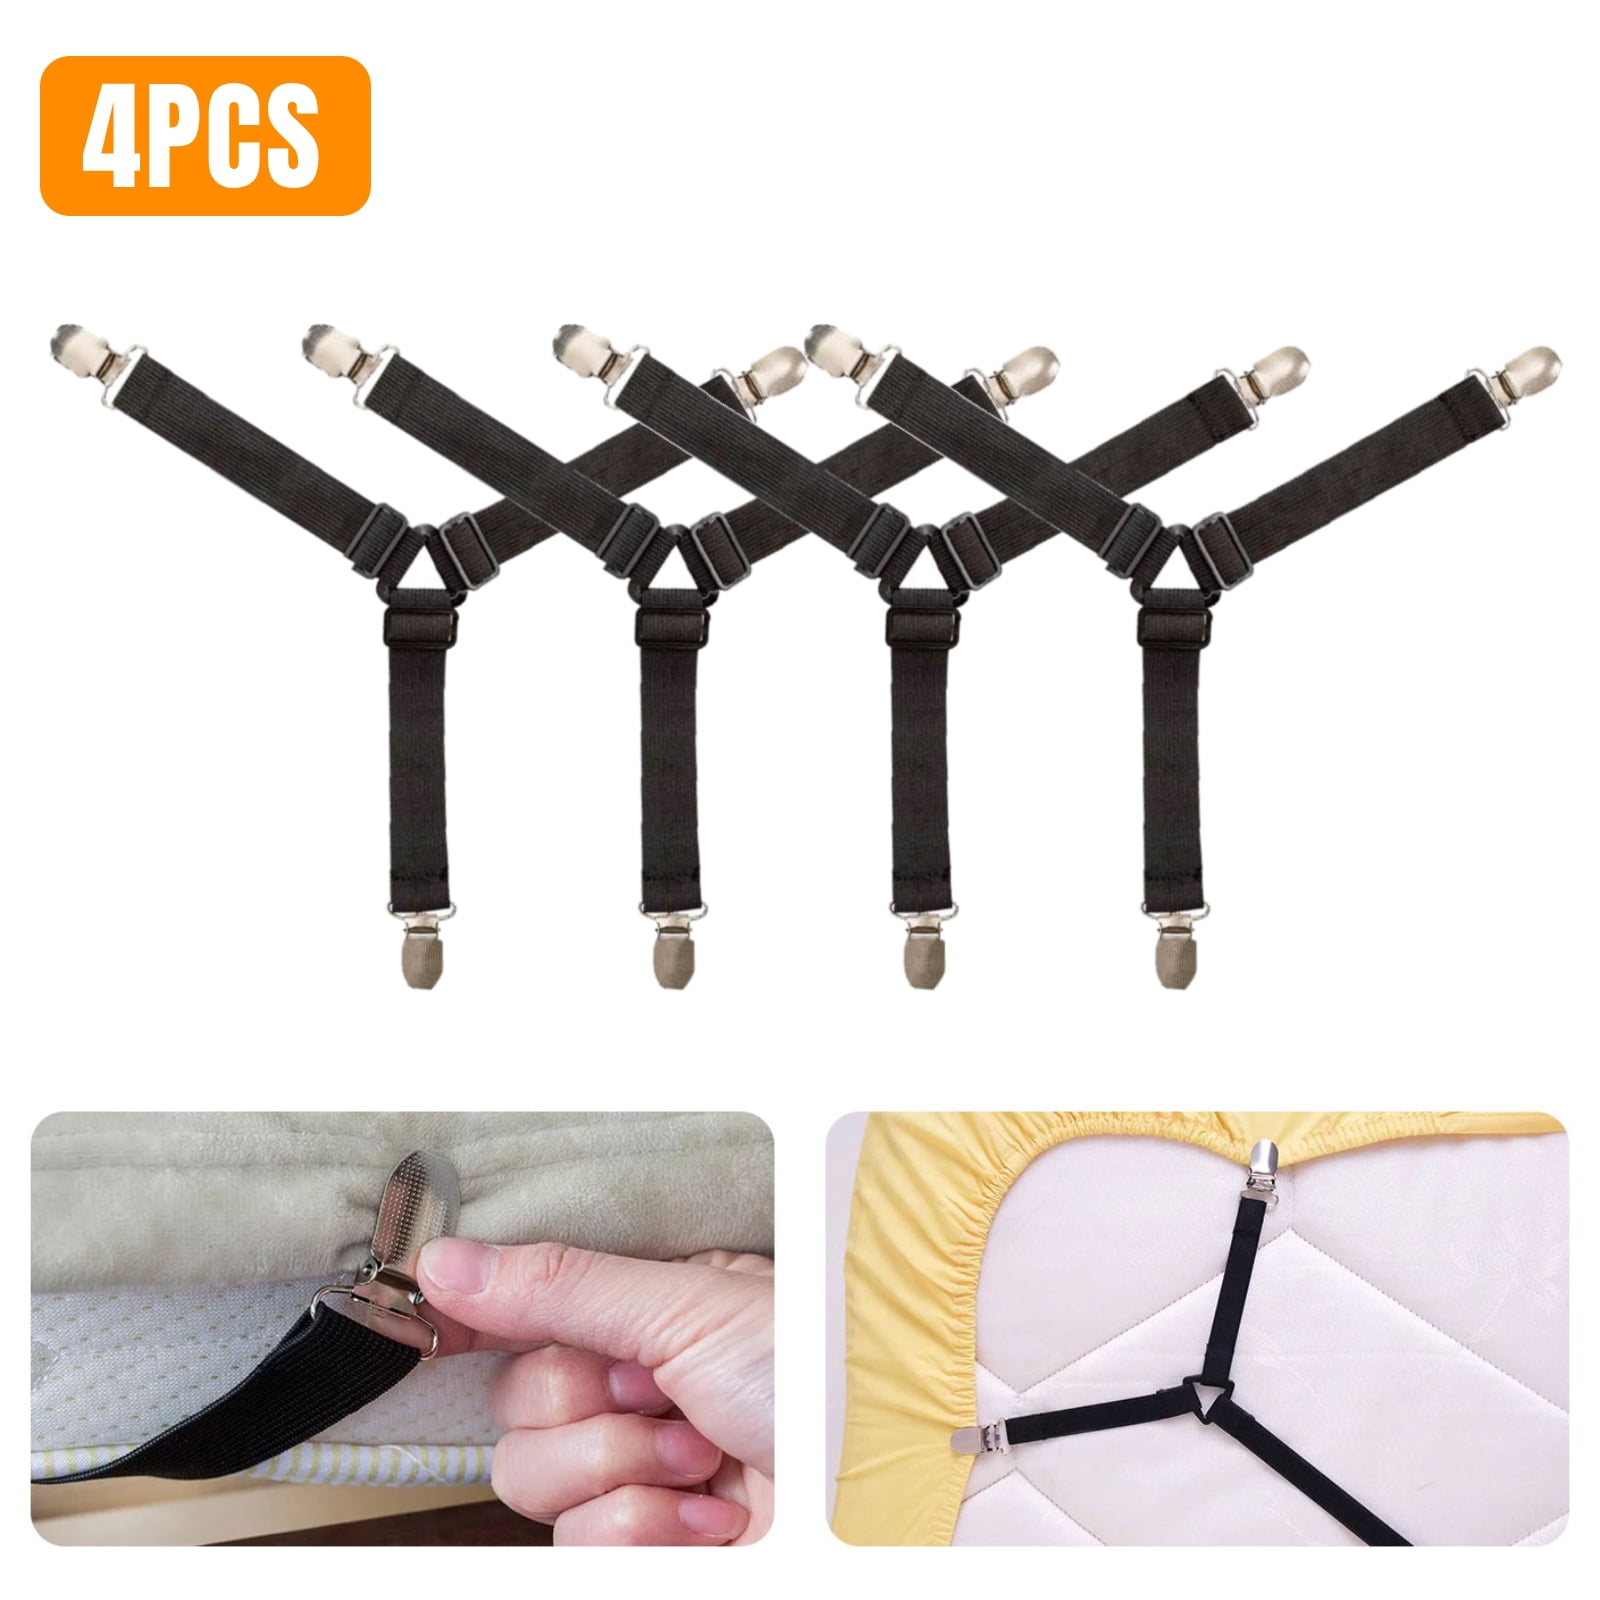 4Pcs/Set Adjustable Bed Sheet Grippers Belt Fastener Bed Sheet